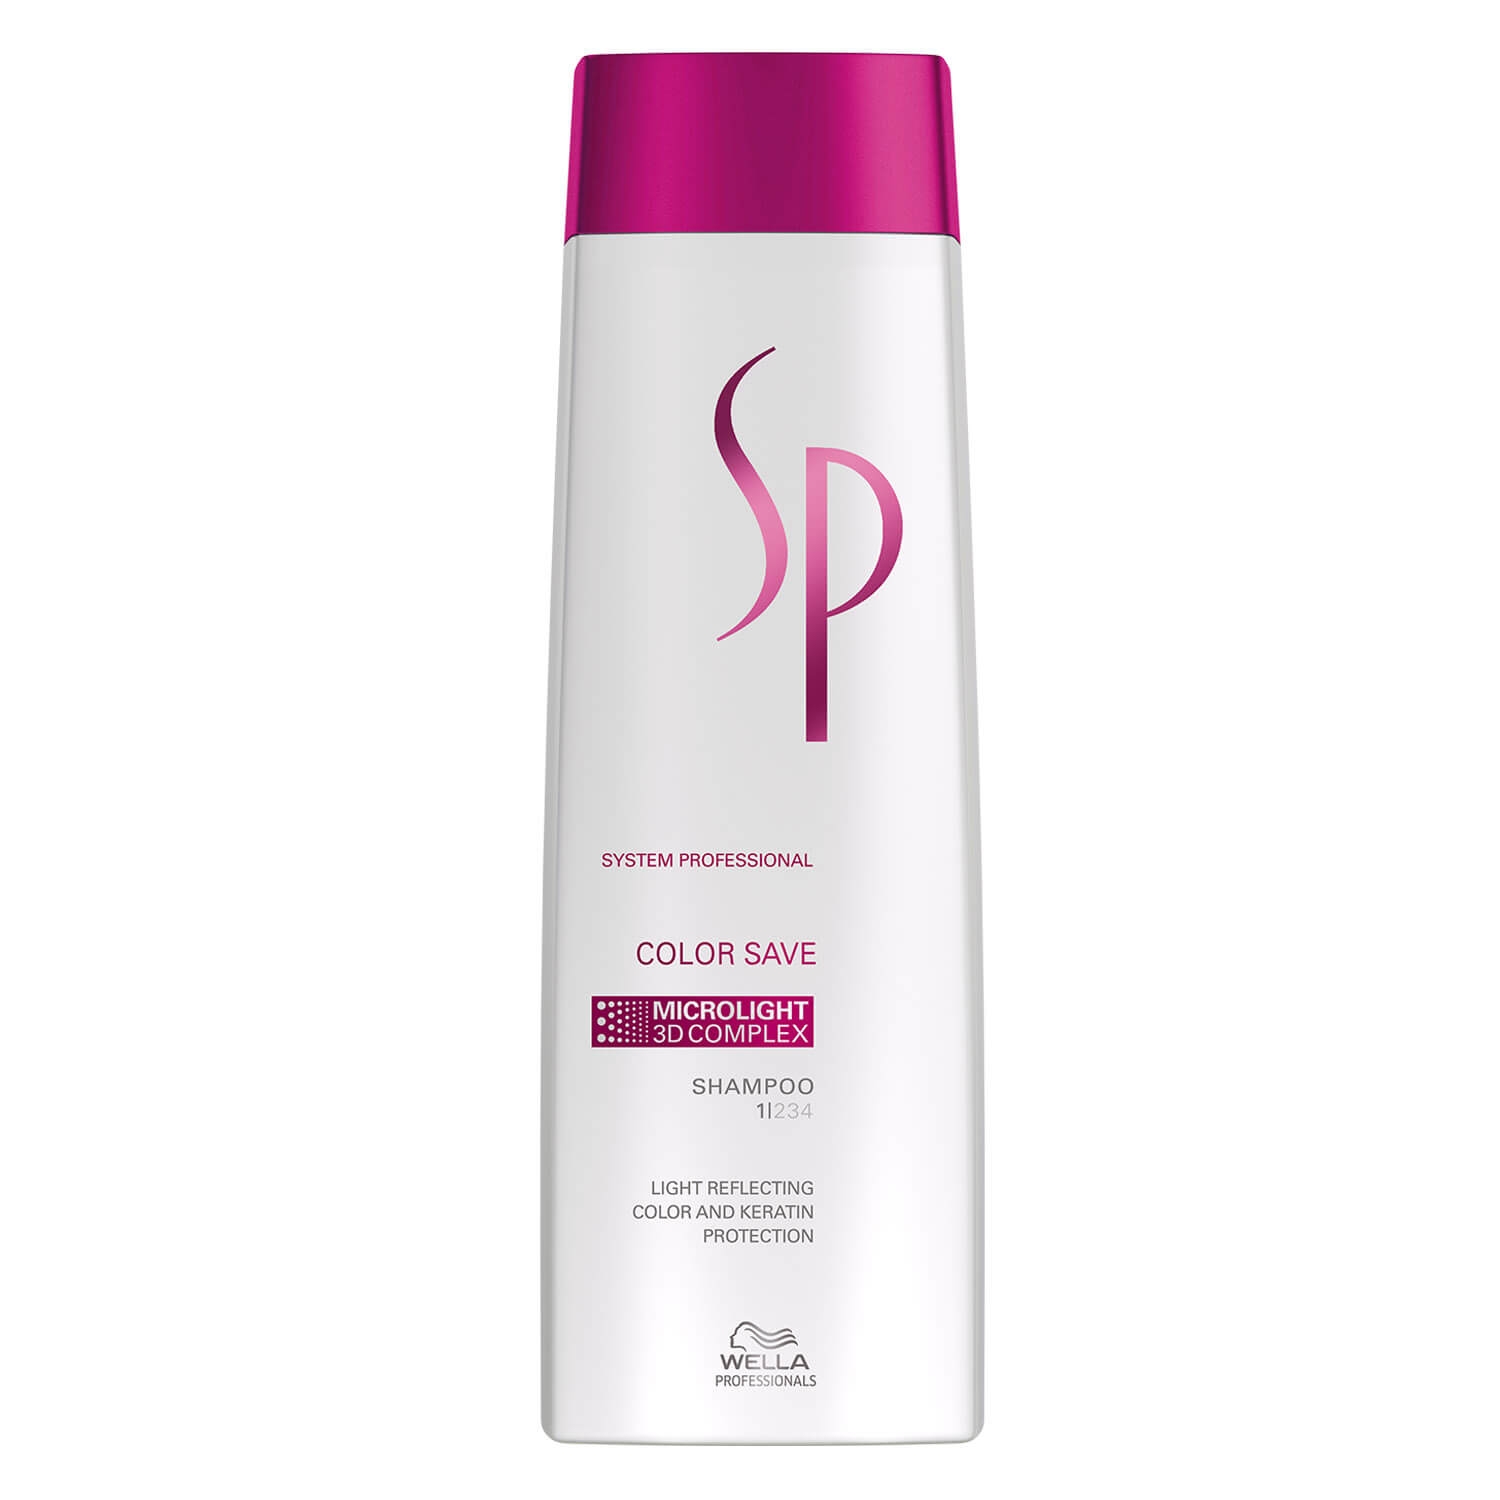 Produktbild von SP Color Save - Shampoo